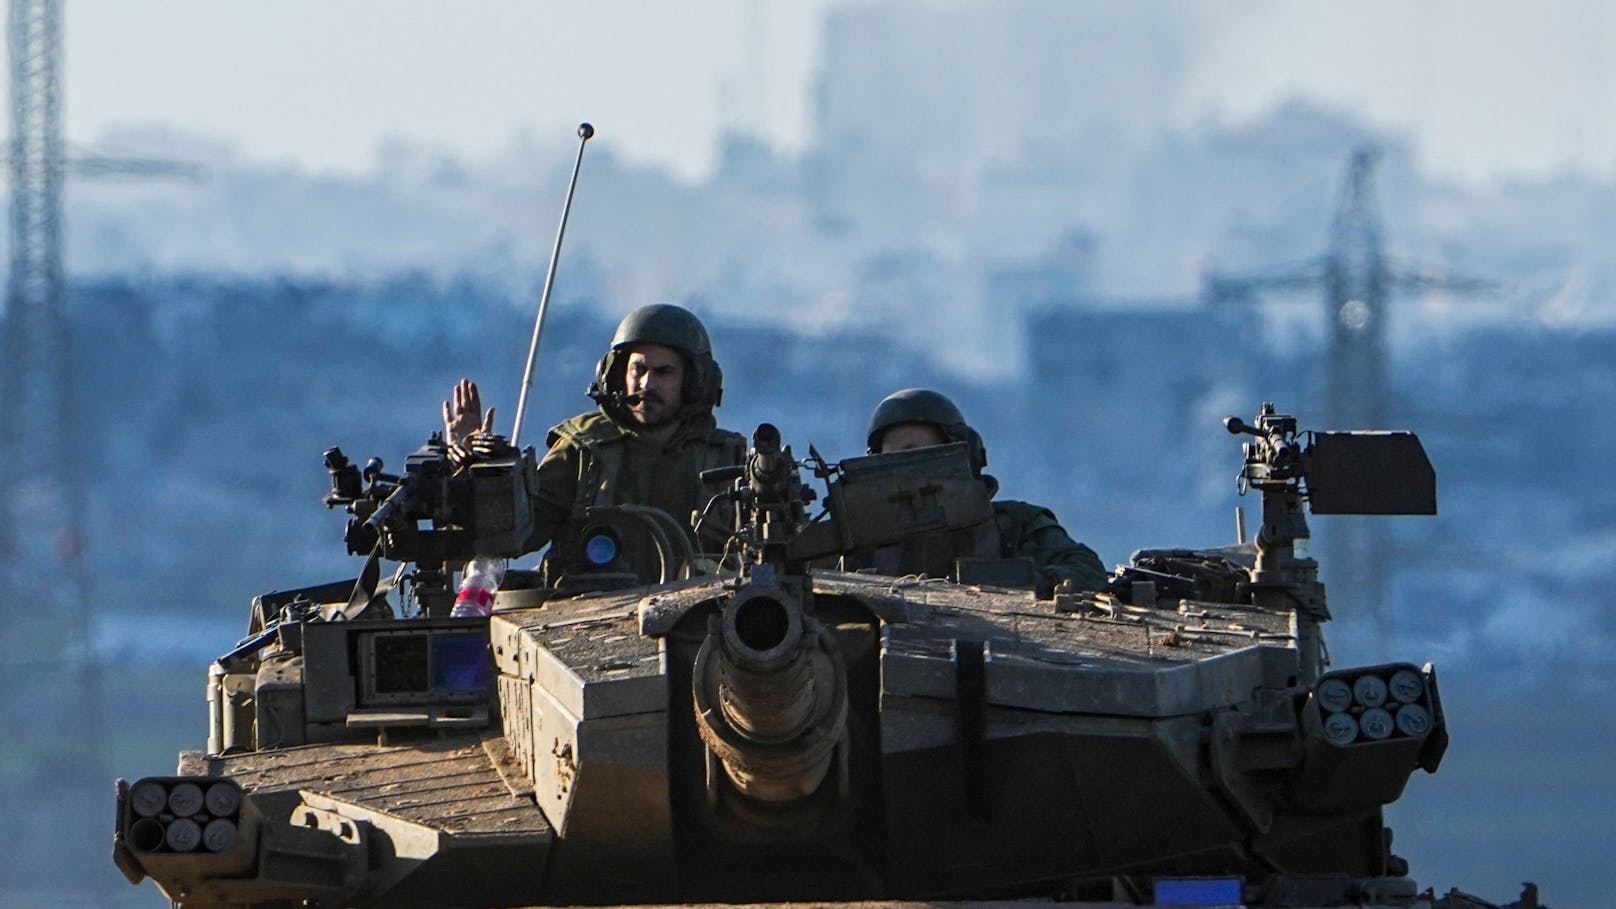 So gespalten sind die Soldaten der israelischen Armee